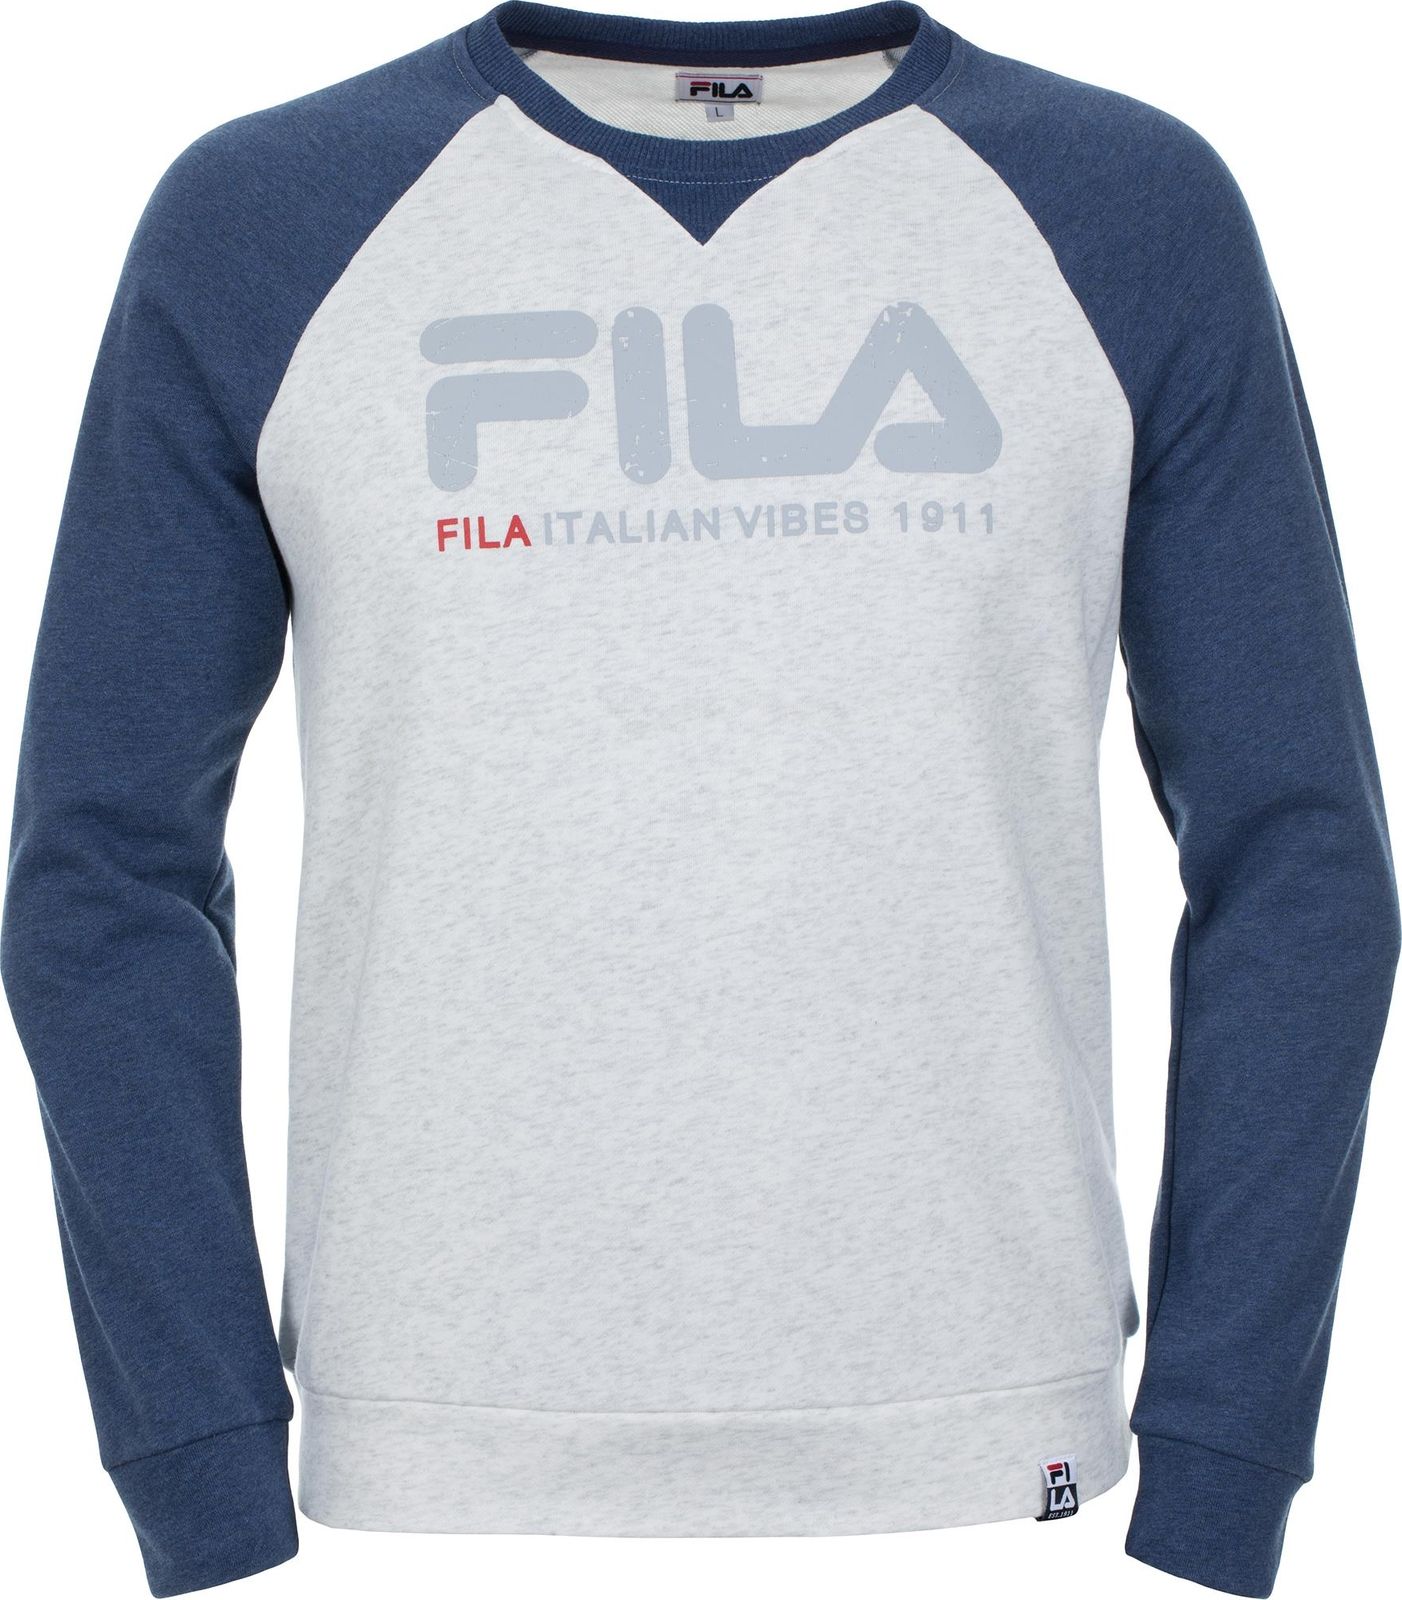   Fila Men's jumper, : -. S19AFLJUM03-1A.  XL (52)